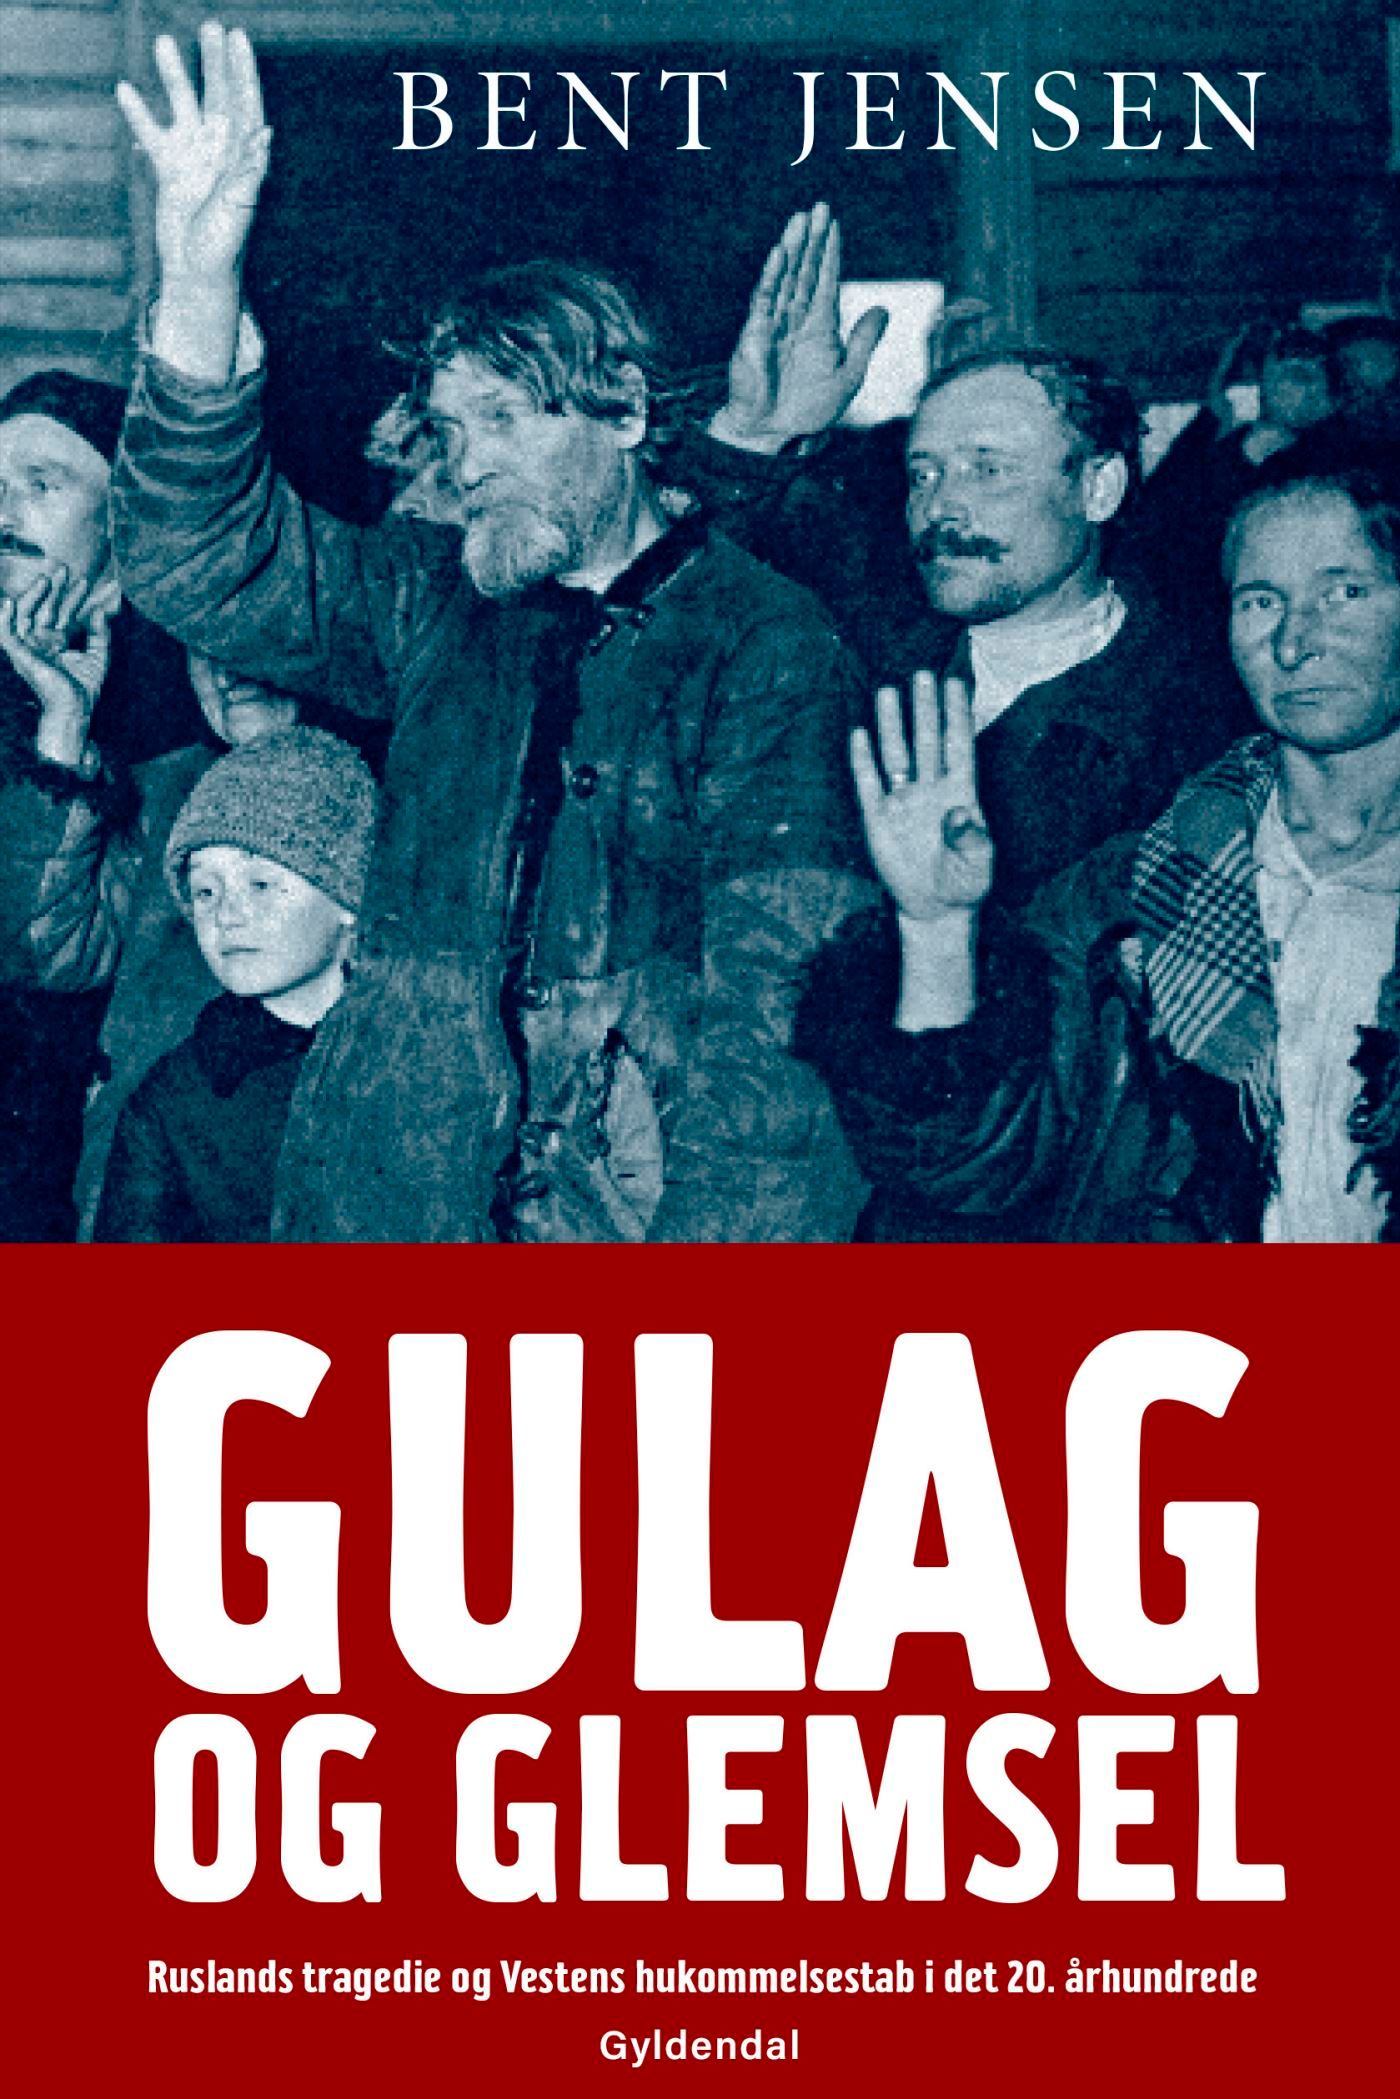 Gulag og glemsel, eBook by Bent Jensen